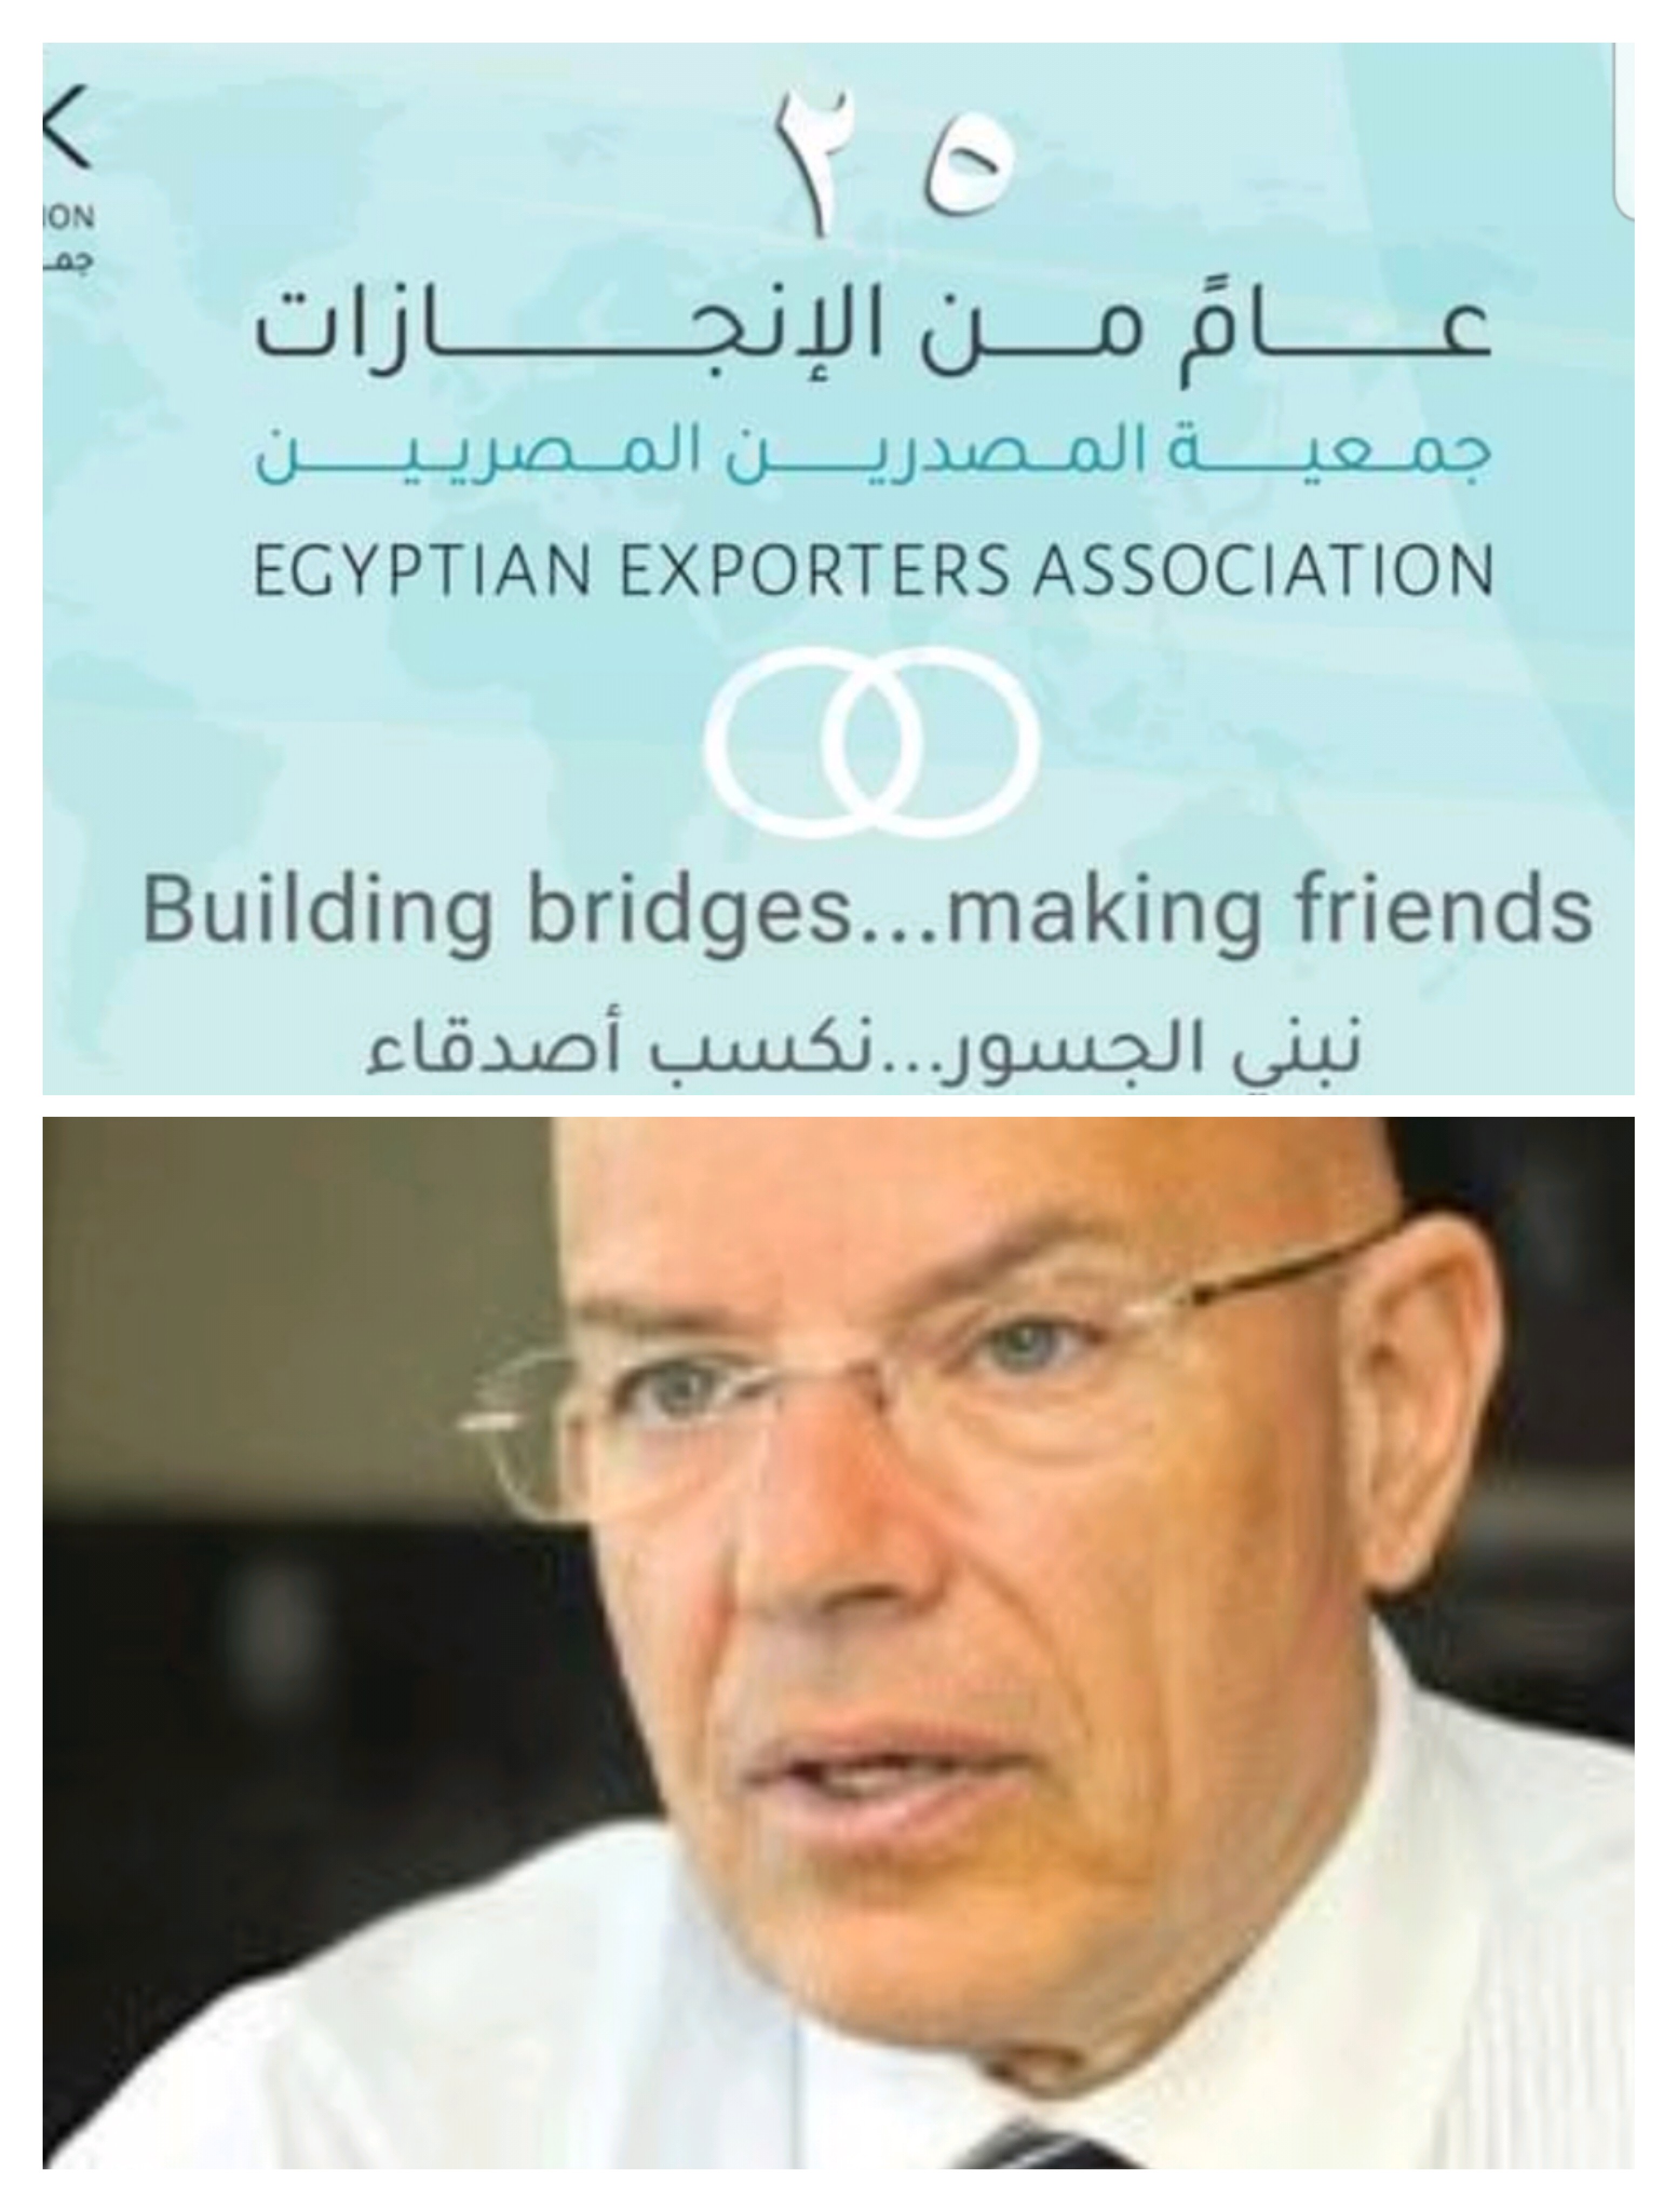 غدا انطلاق النسخة الاولي لمبادرة الاحتفال بيوم المصدر المصري 4 مارس